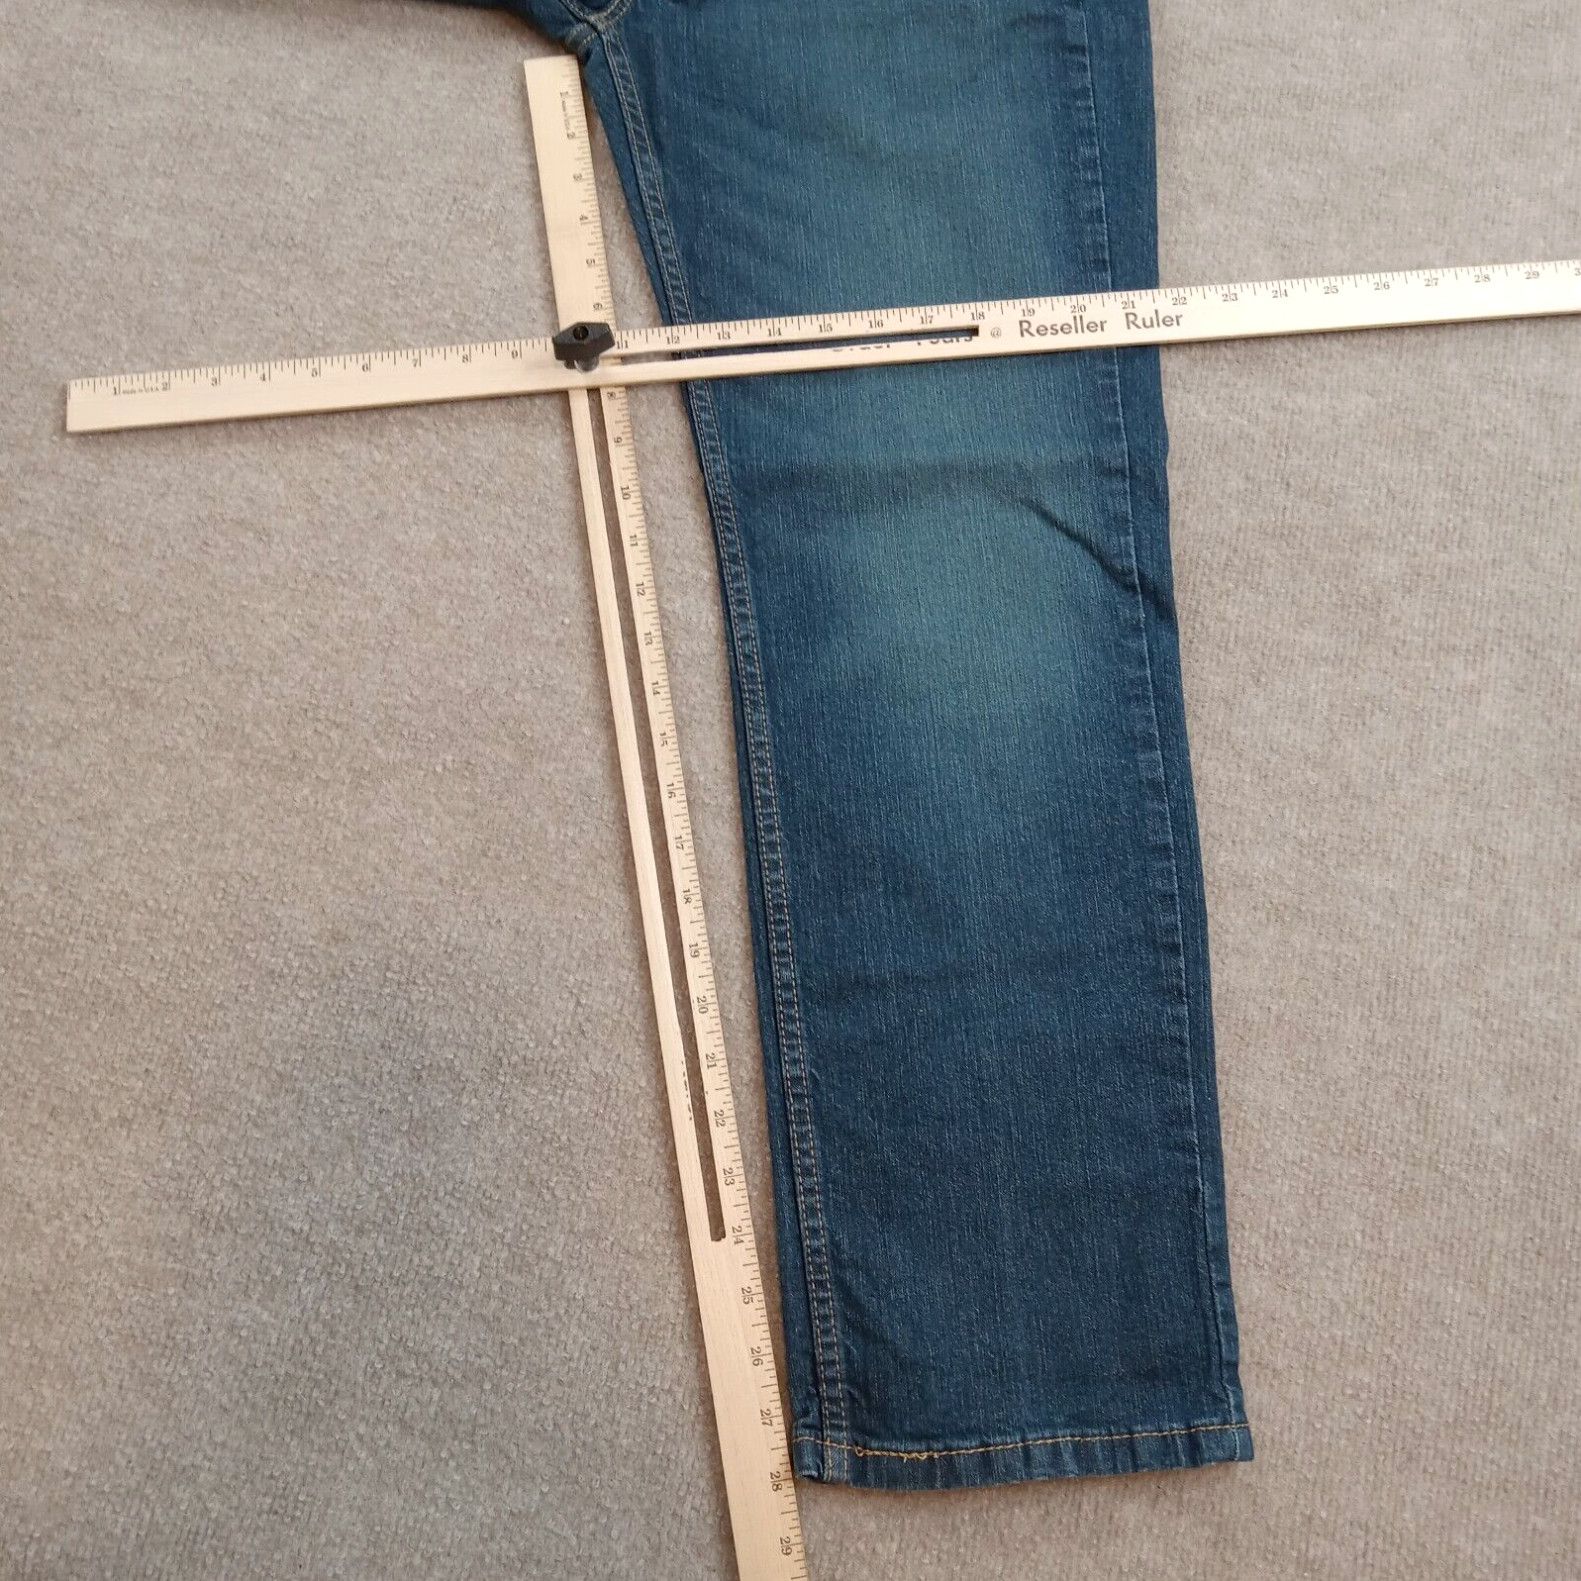 Levi's Levis 514 Jeans Mens 33x30 (33x28 Actual) Blue Denim Straight Leg Casual Stretch Size US 33 - 2 Preview